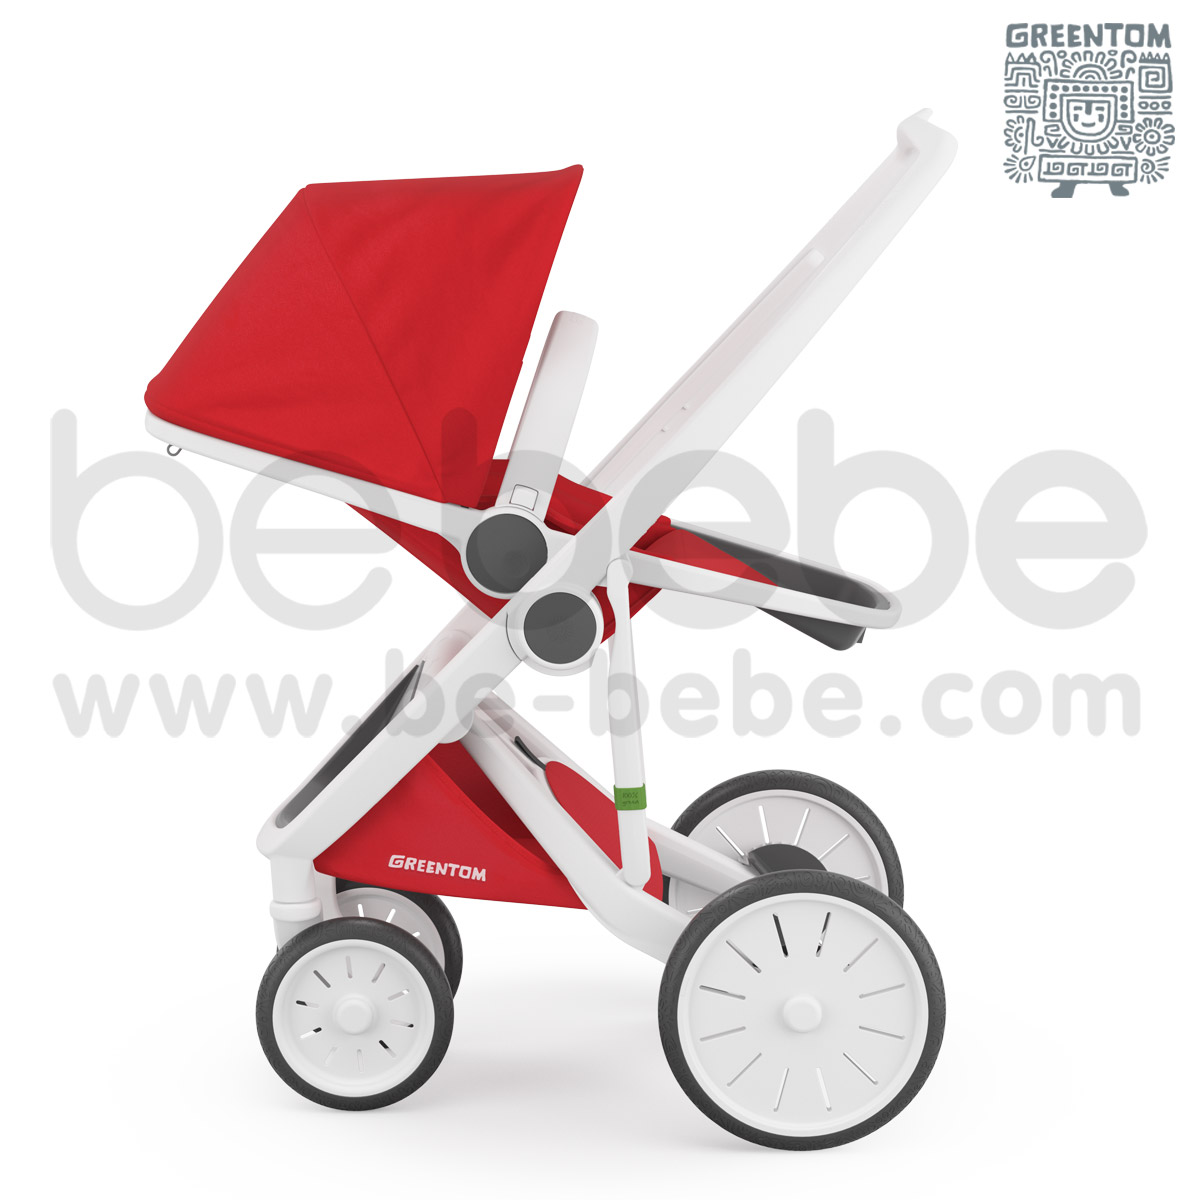 Greentom : Revesible White Frame Stroller - Red